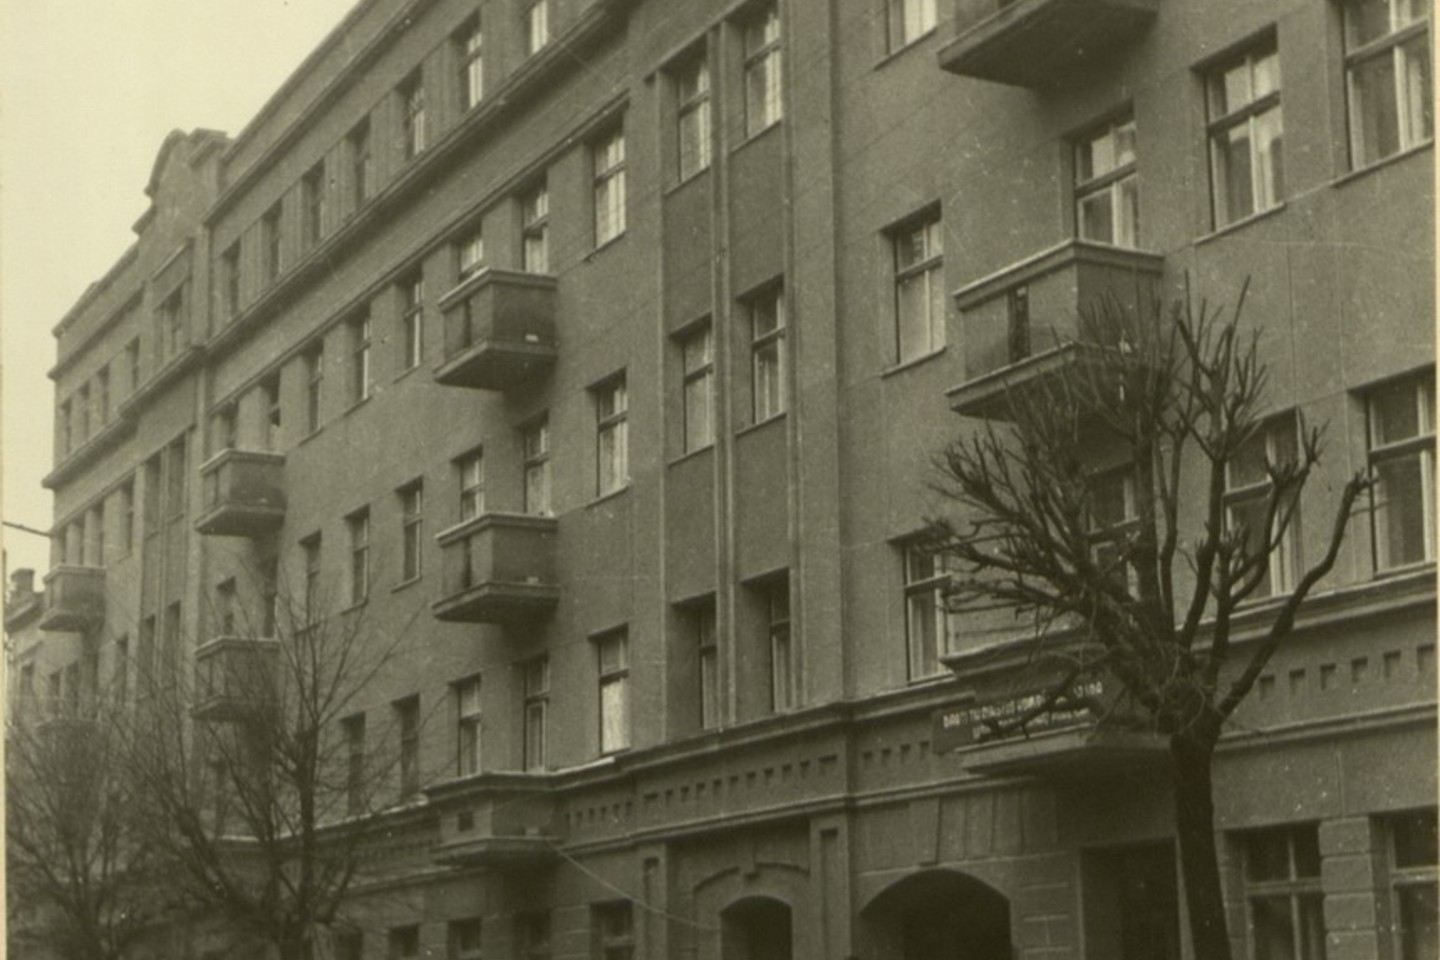 Gyvenamųjų namų rajono statyba Kaune. 1950 m.<br>Lietuvos ypatingojo archyvo nuotr.